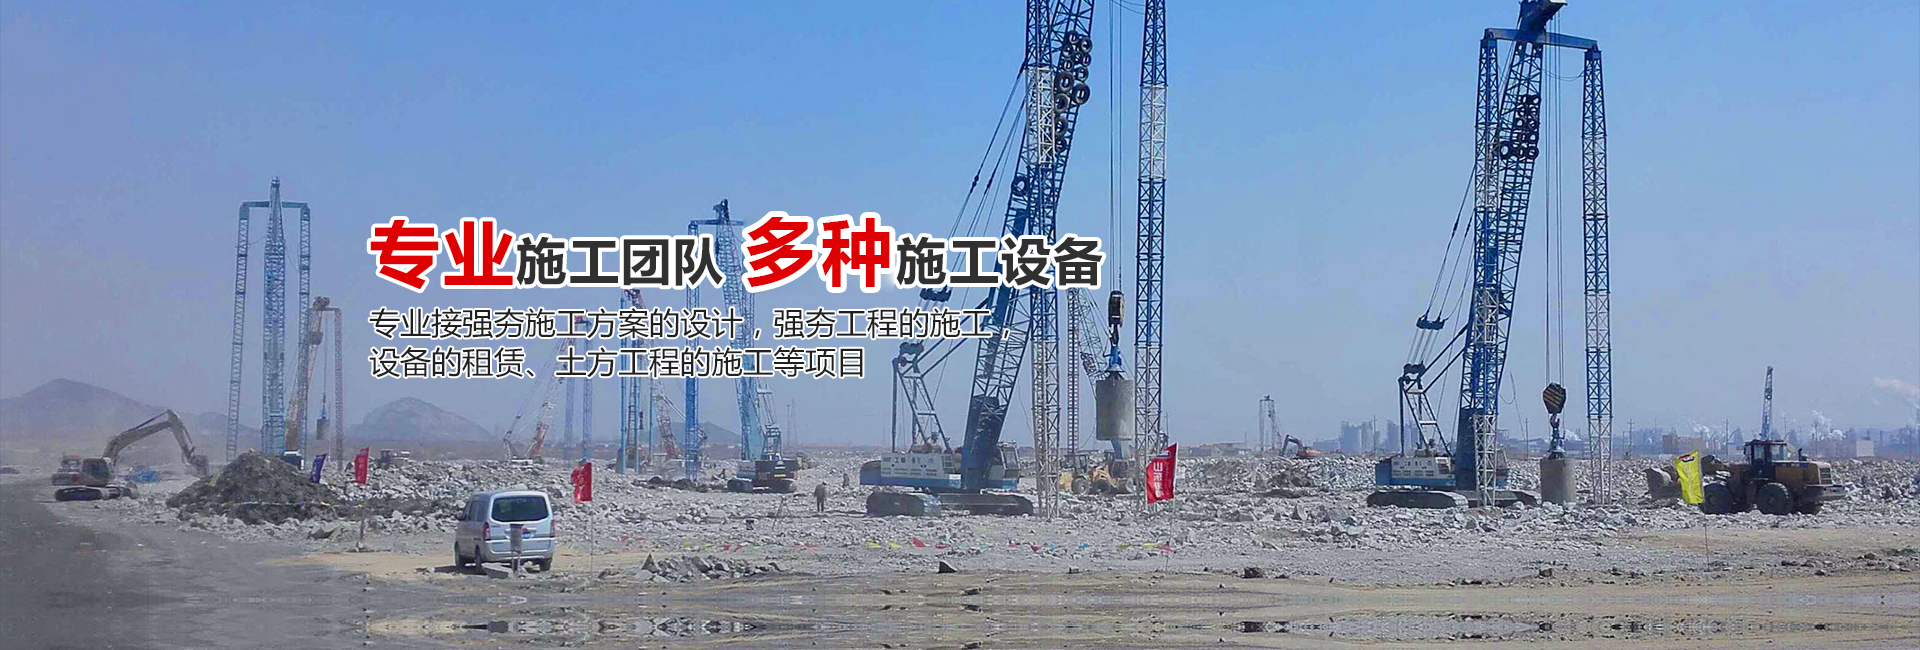 重庆三峡地质工程技术有限公司